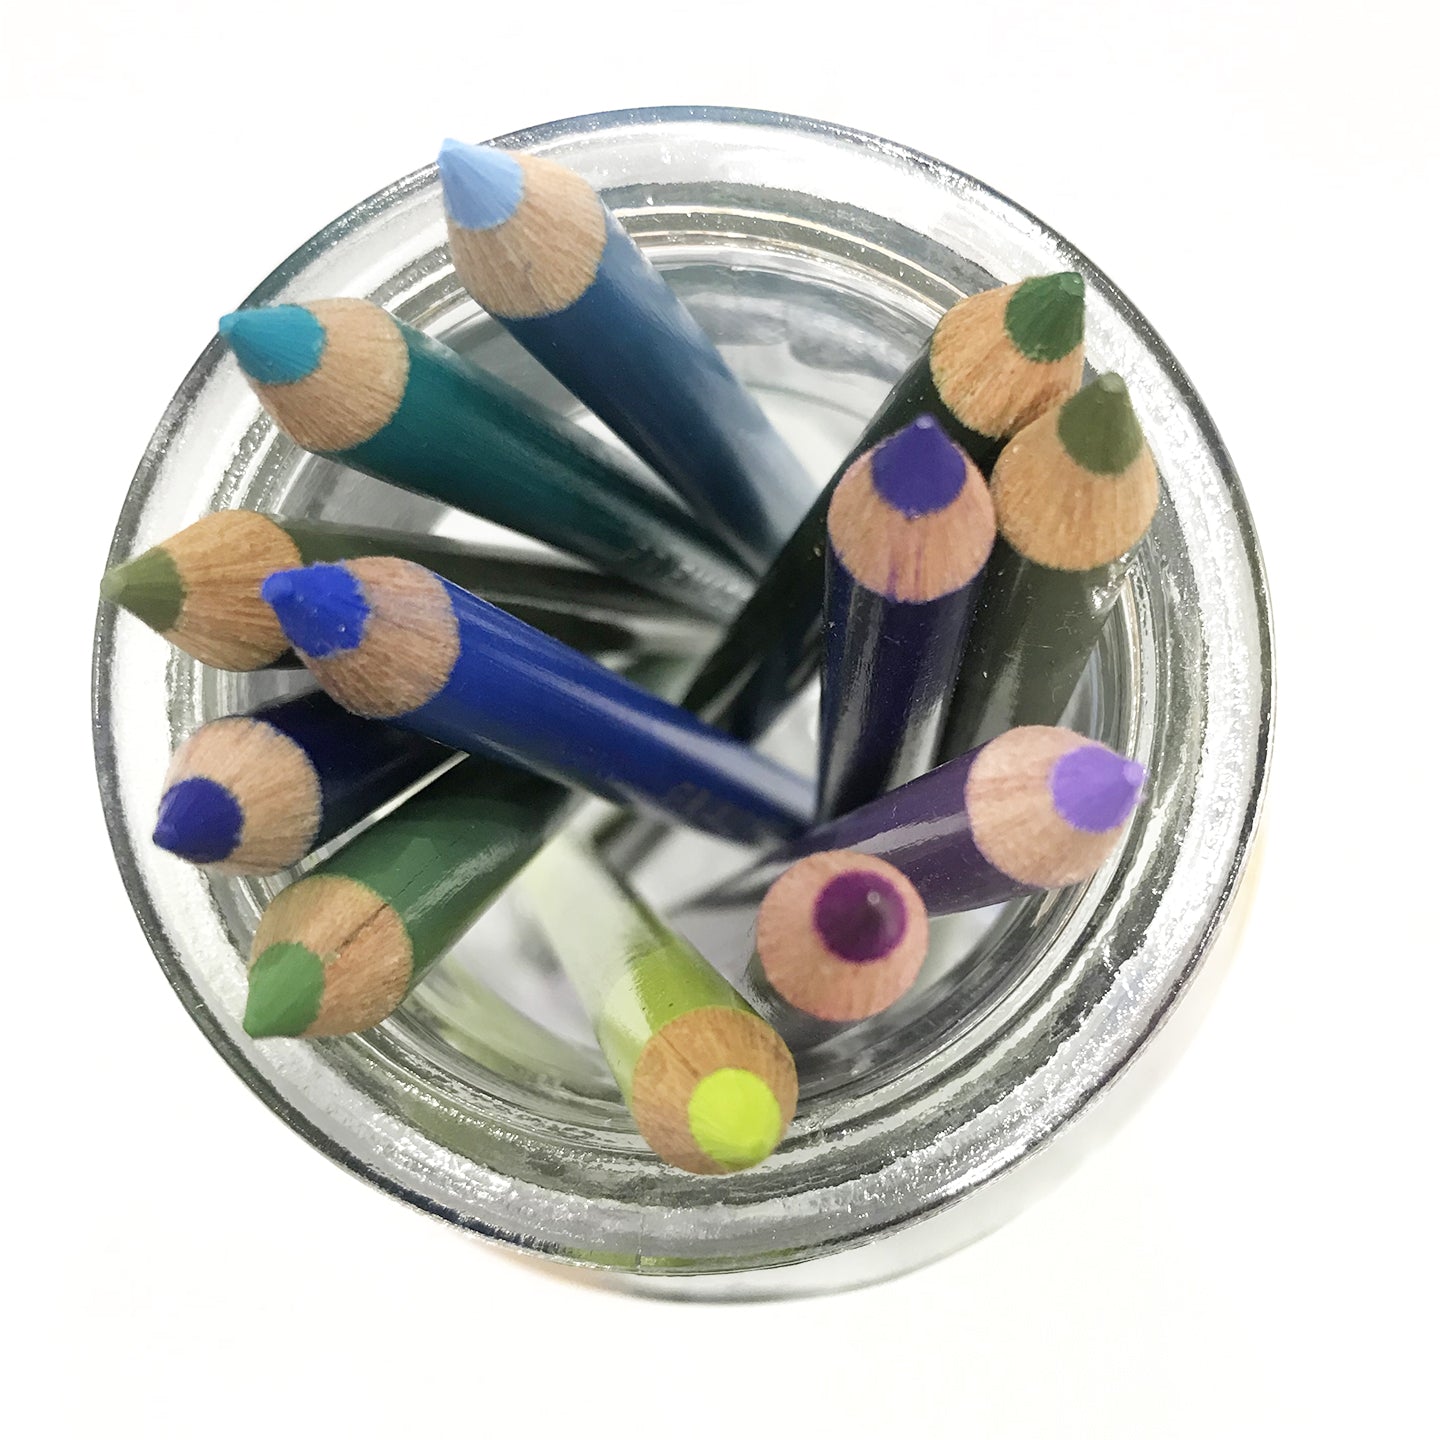 Prismacolor Scholar Art Pencil Set - Assorted Colors, Classroom